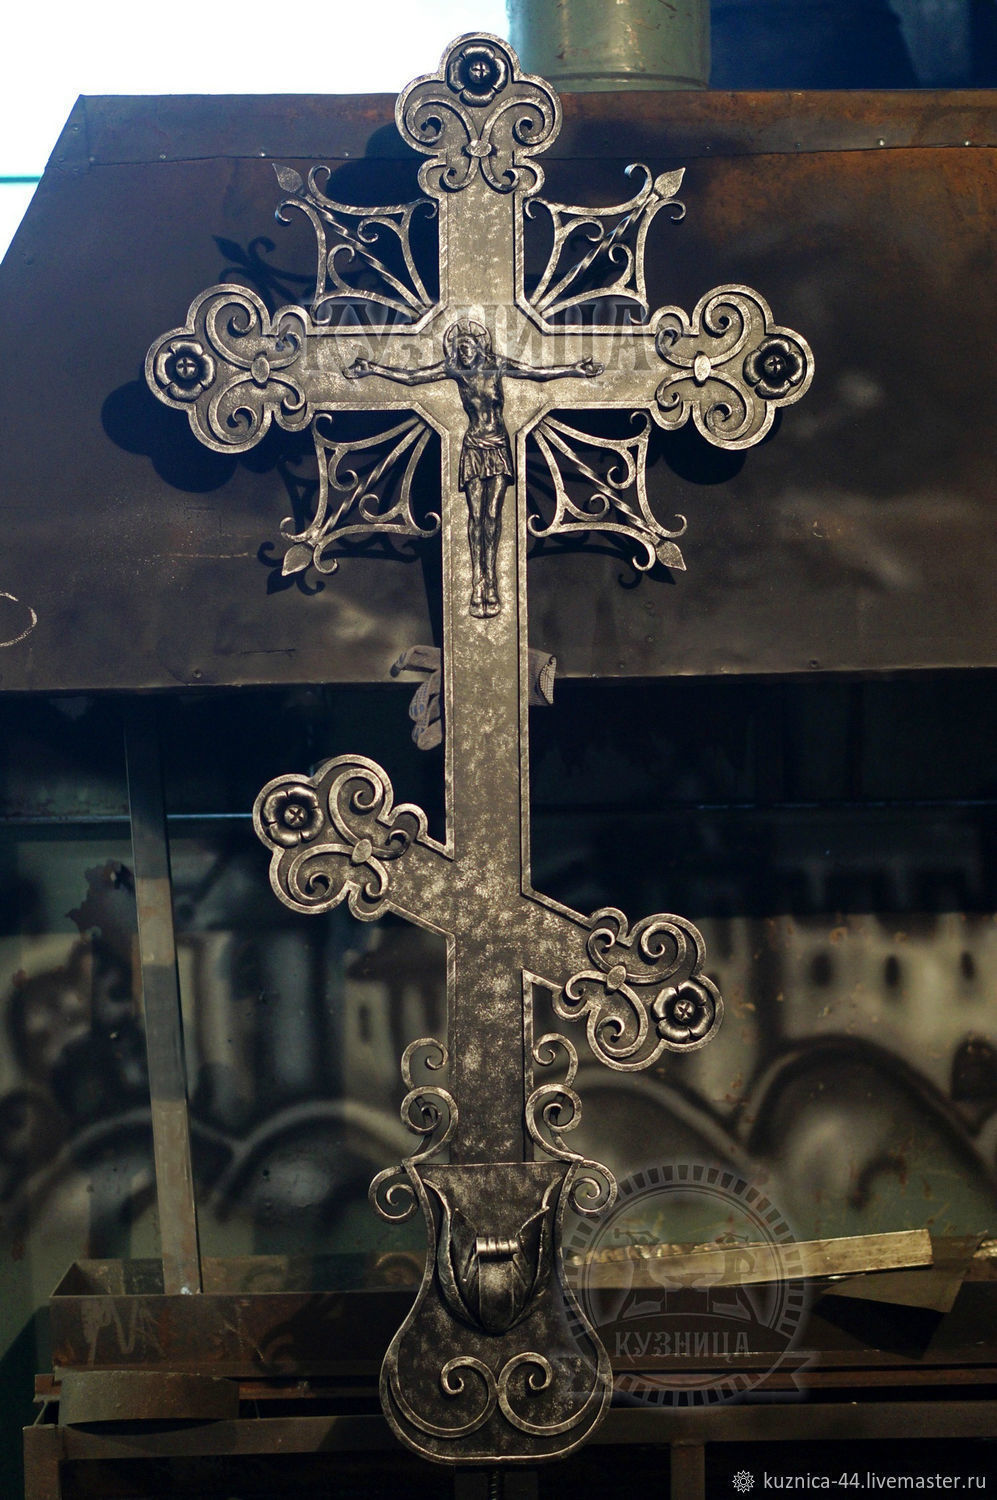 Кованый крест с литой фигурой Христа и чашей для цветов.
Высота 1.80 см